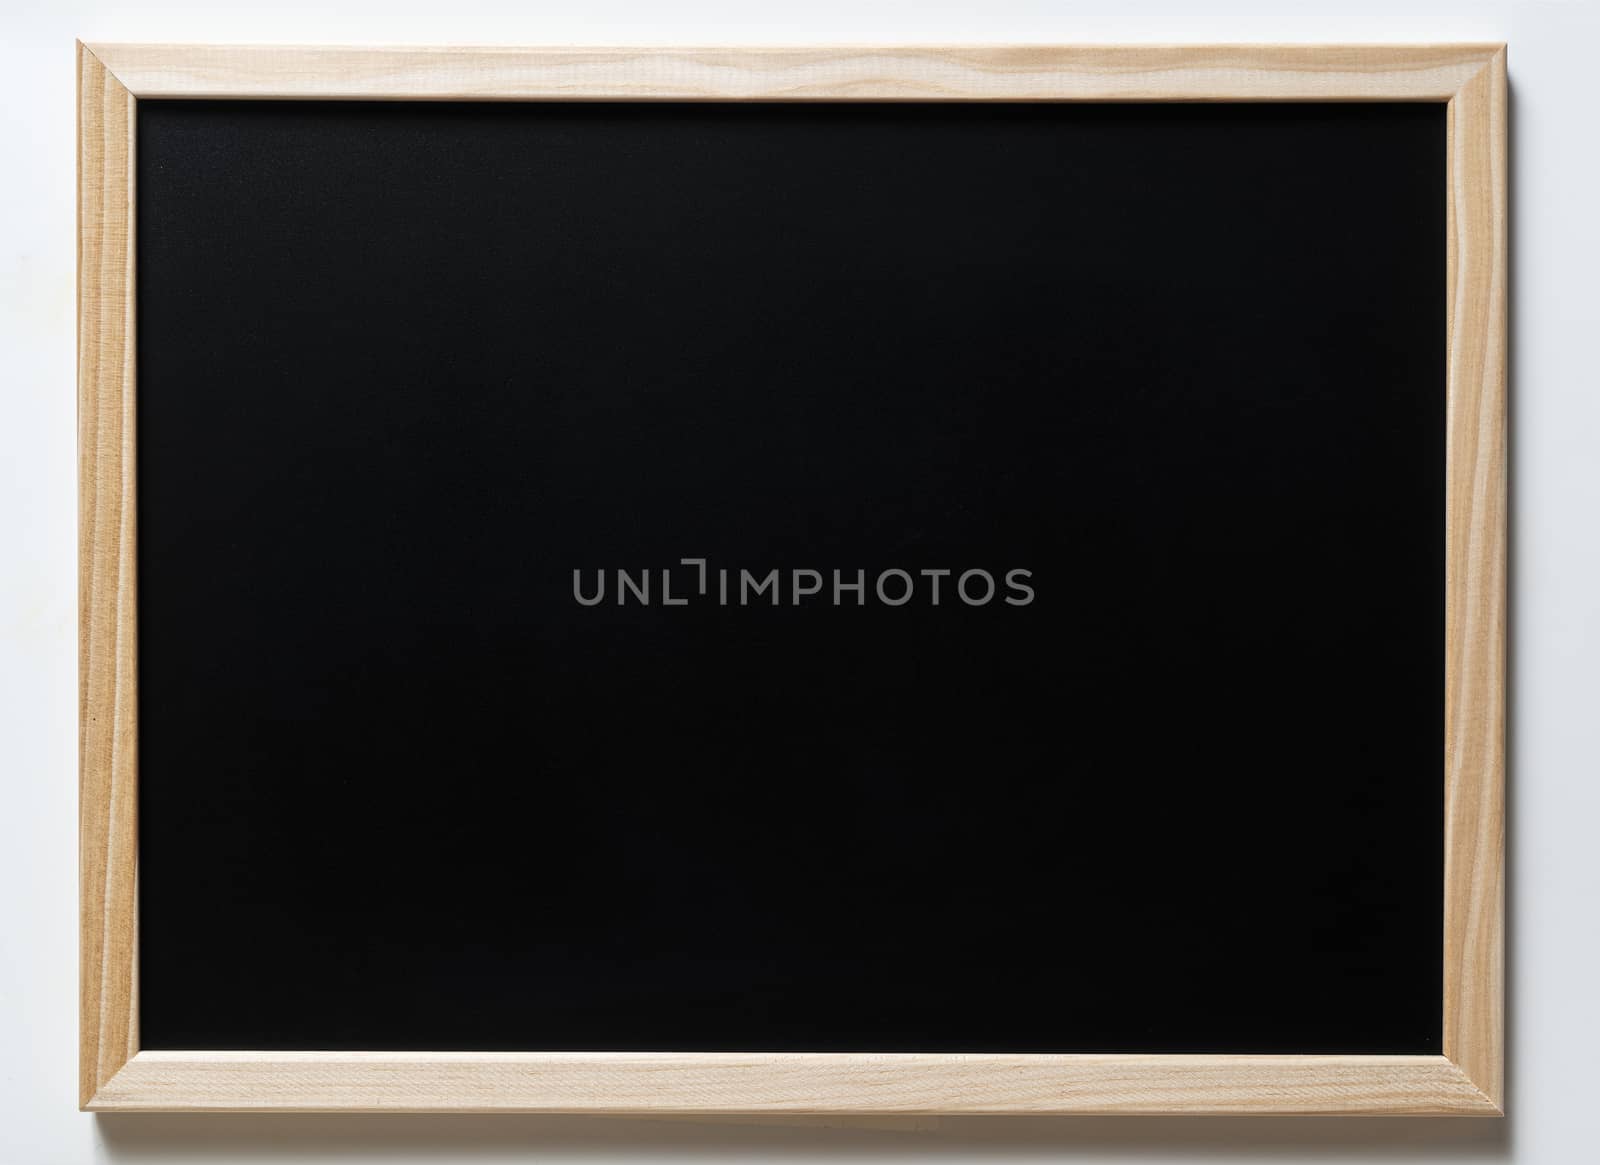 A blank blackboard by sergiodv